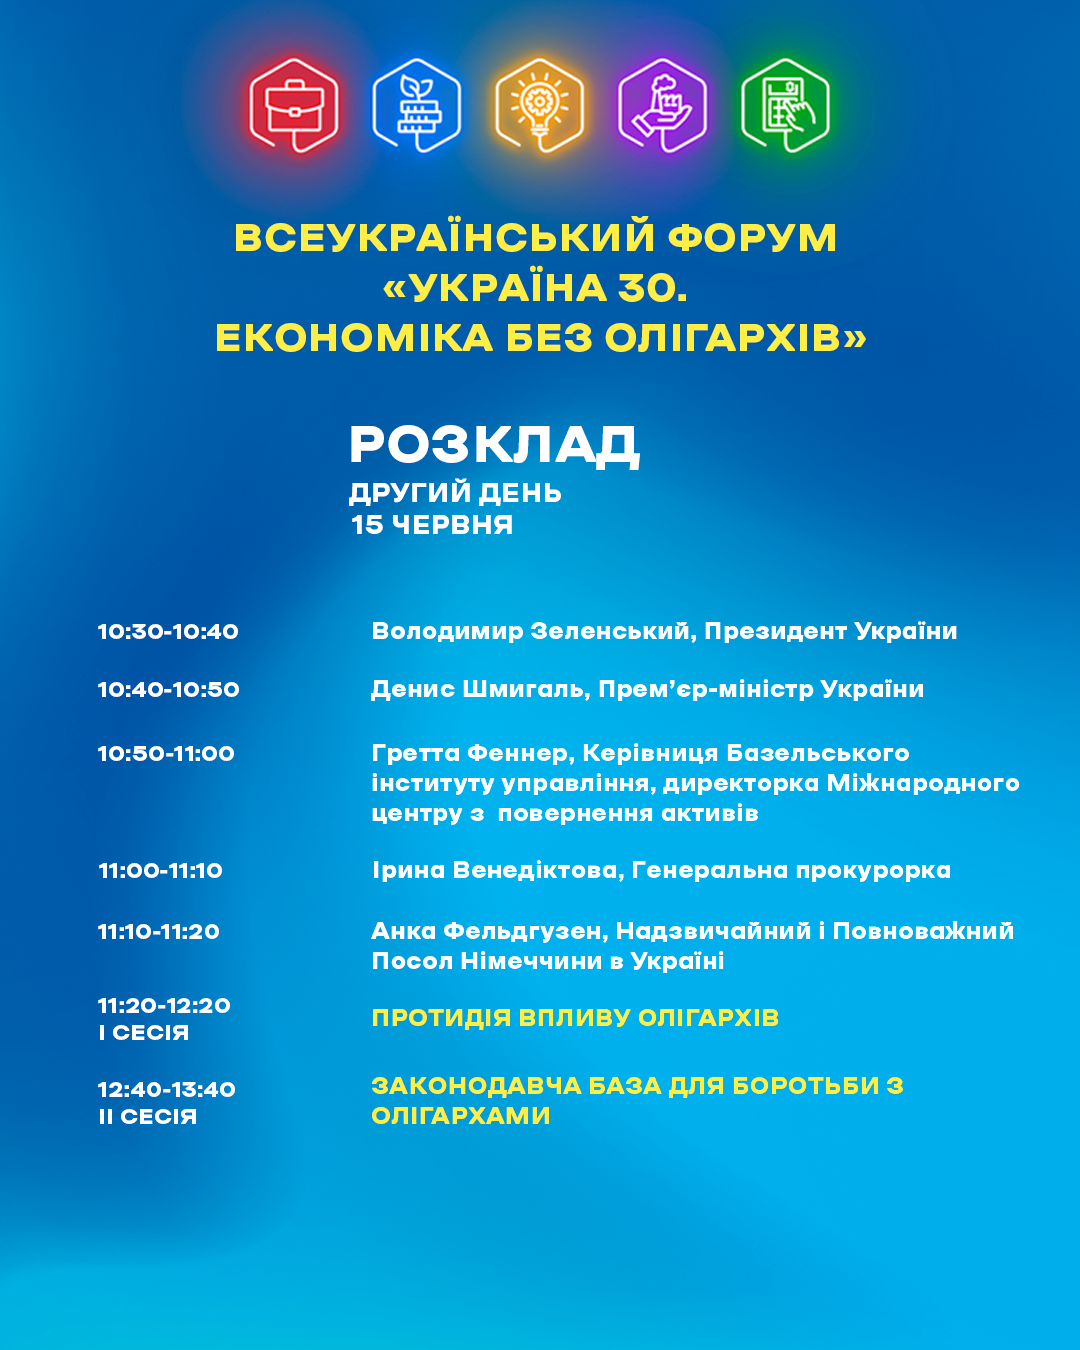 Володимир Зеленський 15 червня долучиться до роботи форуму «Україна 30. Економіка без олігархів»